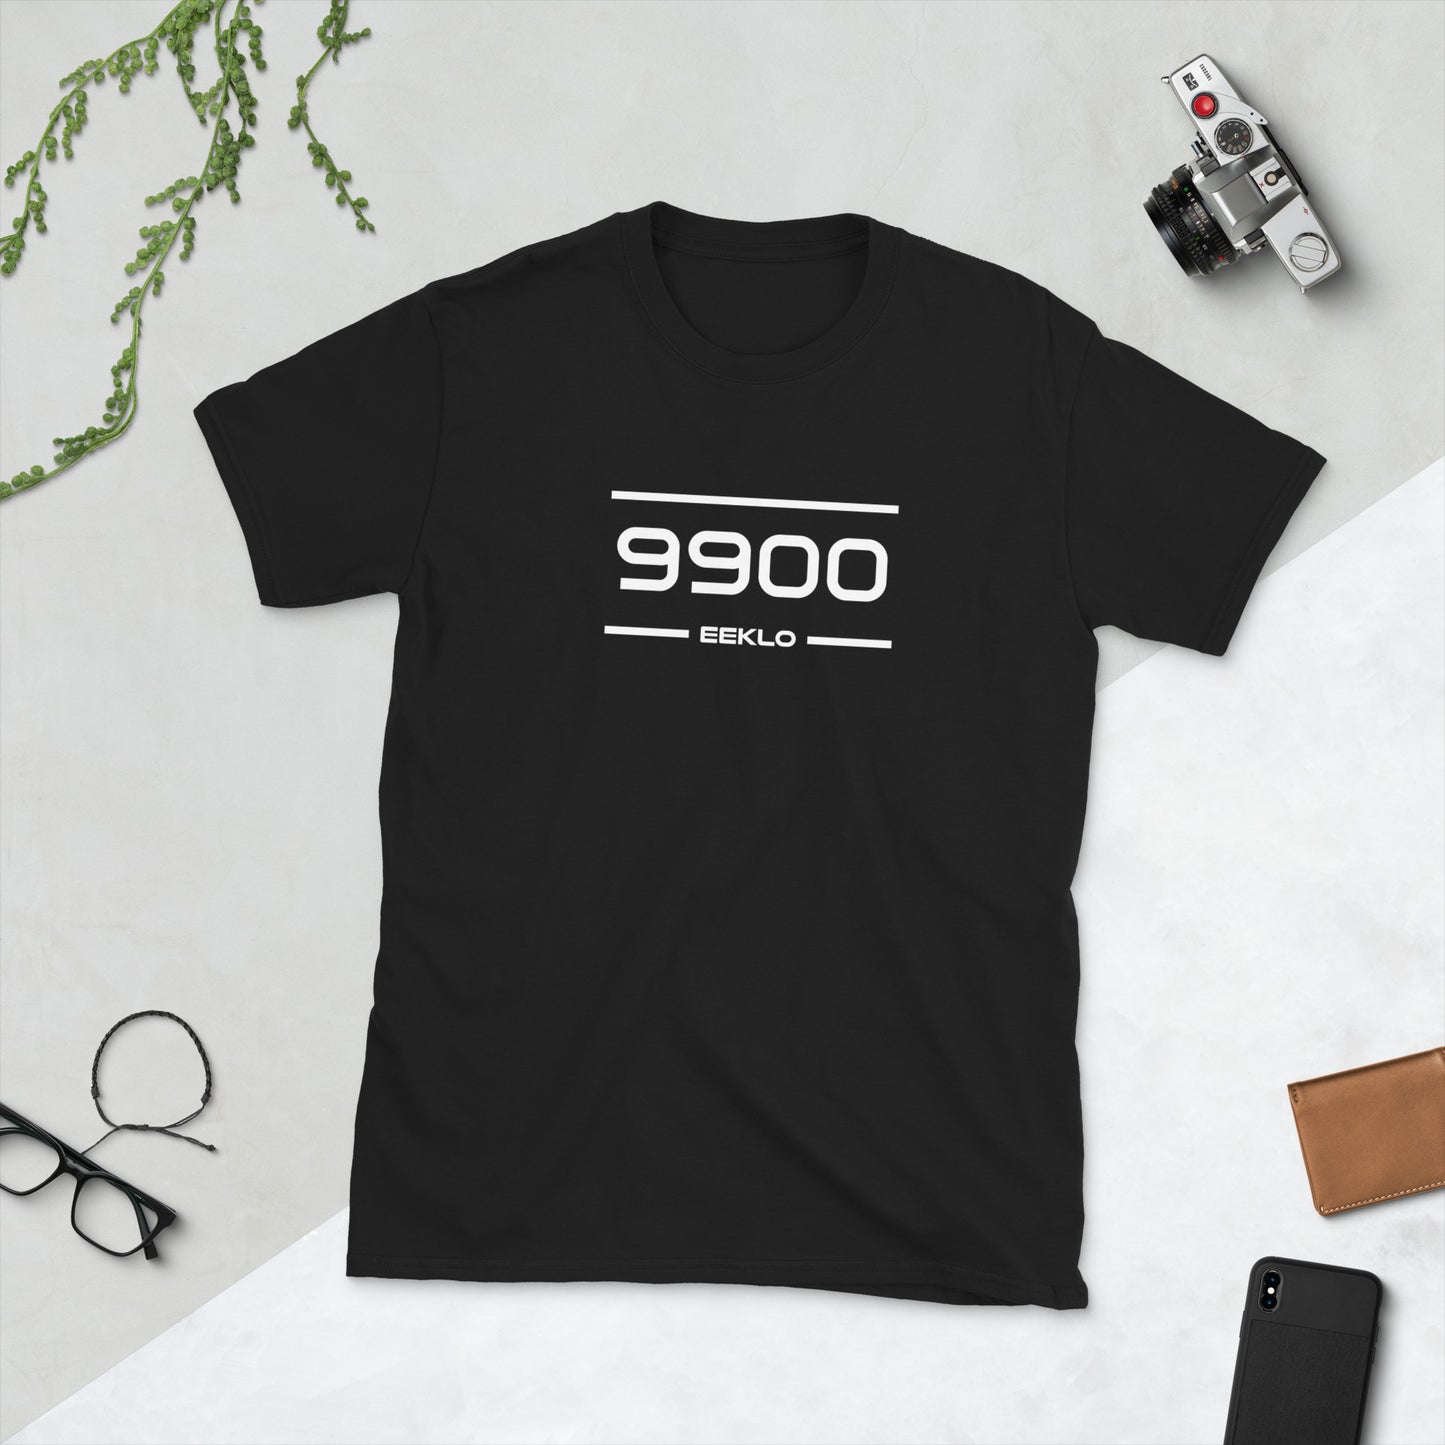 Tshirt - 9900 - Eeklo